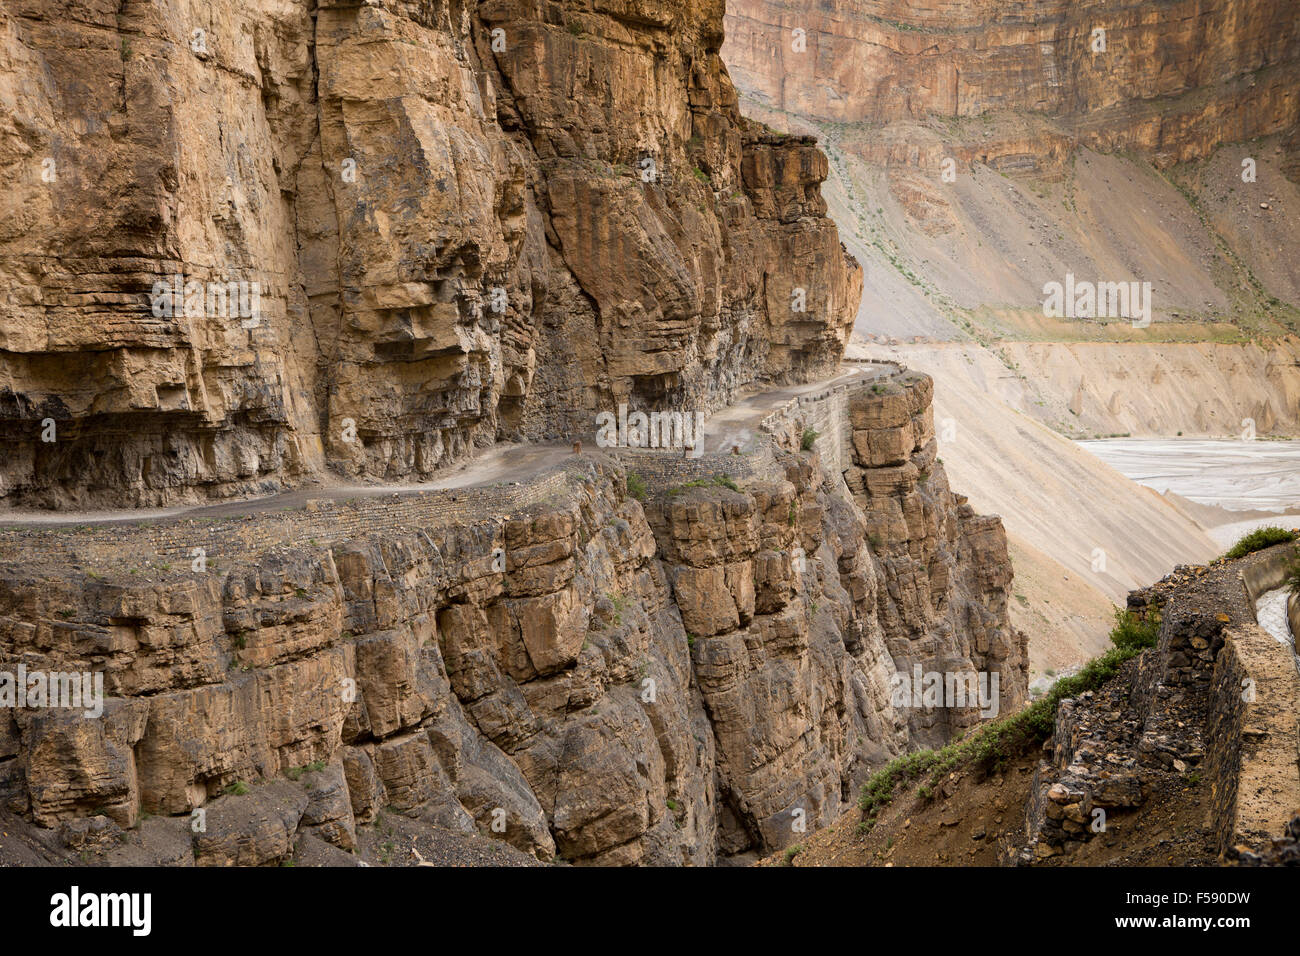 India, Himachal Pradesh, Spiti Valley, Losar, pericolose montagna stretta strada tagliata nella roccia a strapiombo Foto Stock